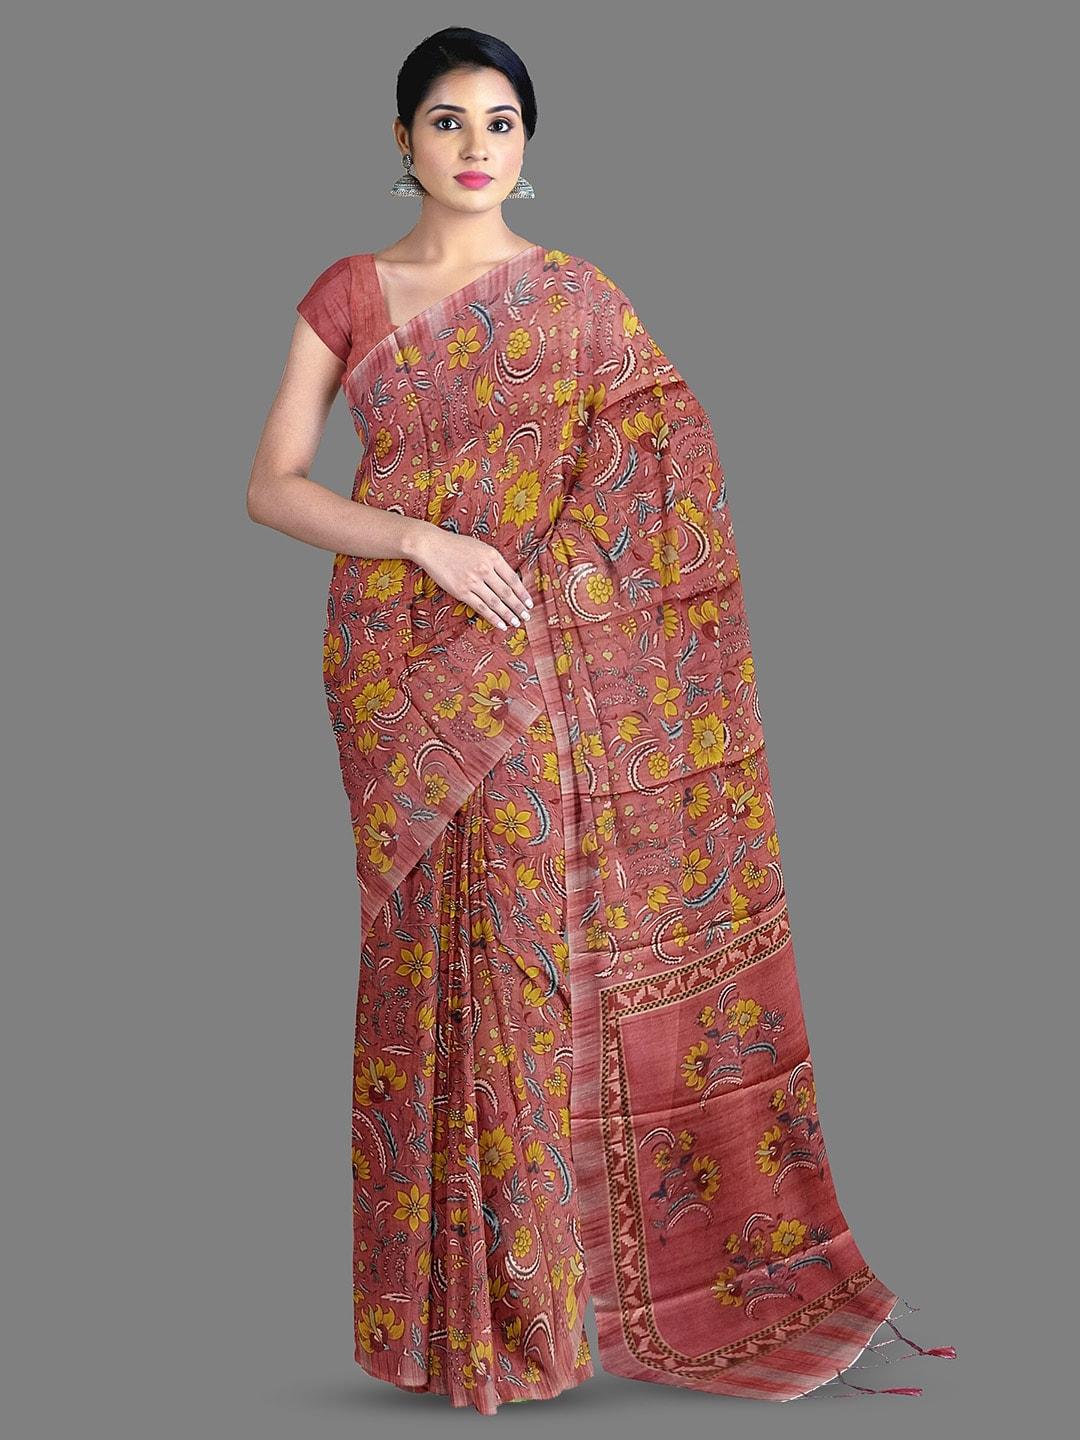 The Chennai Silks Floral Printed Silk Blend Saree